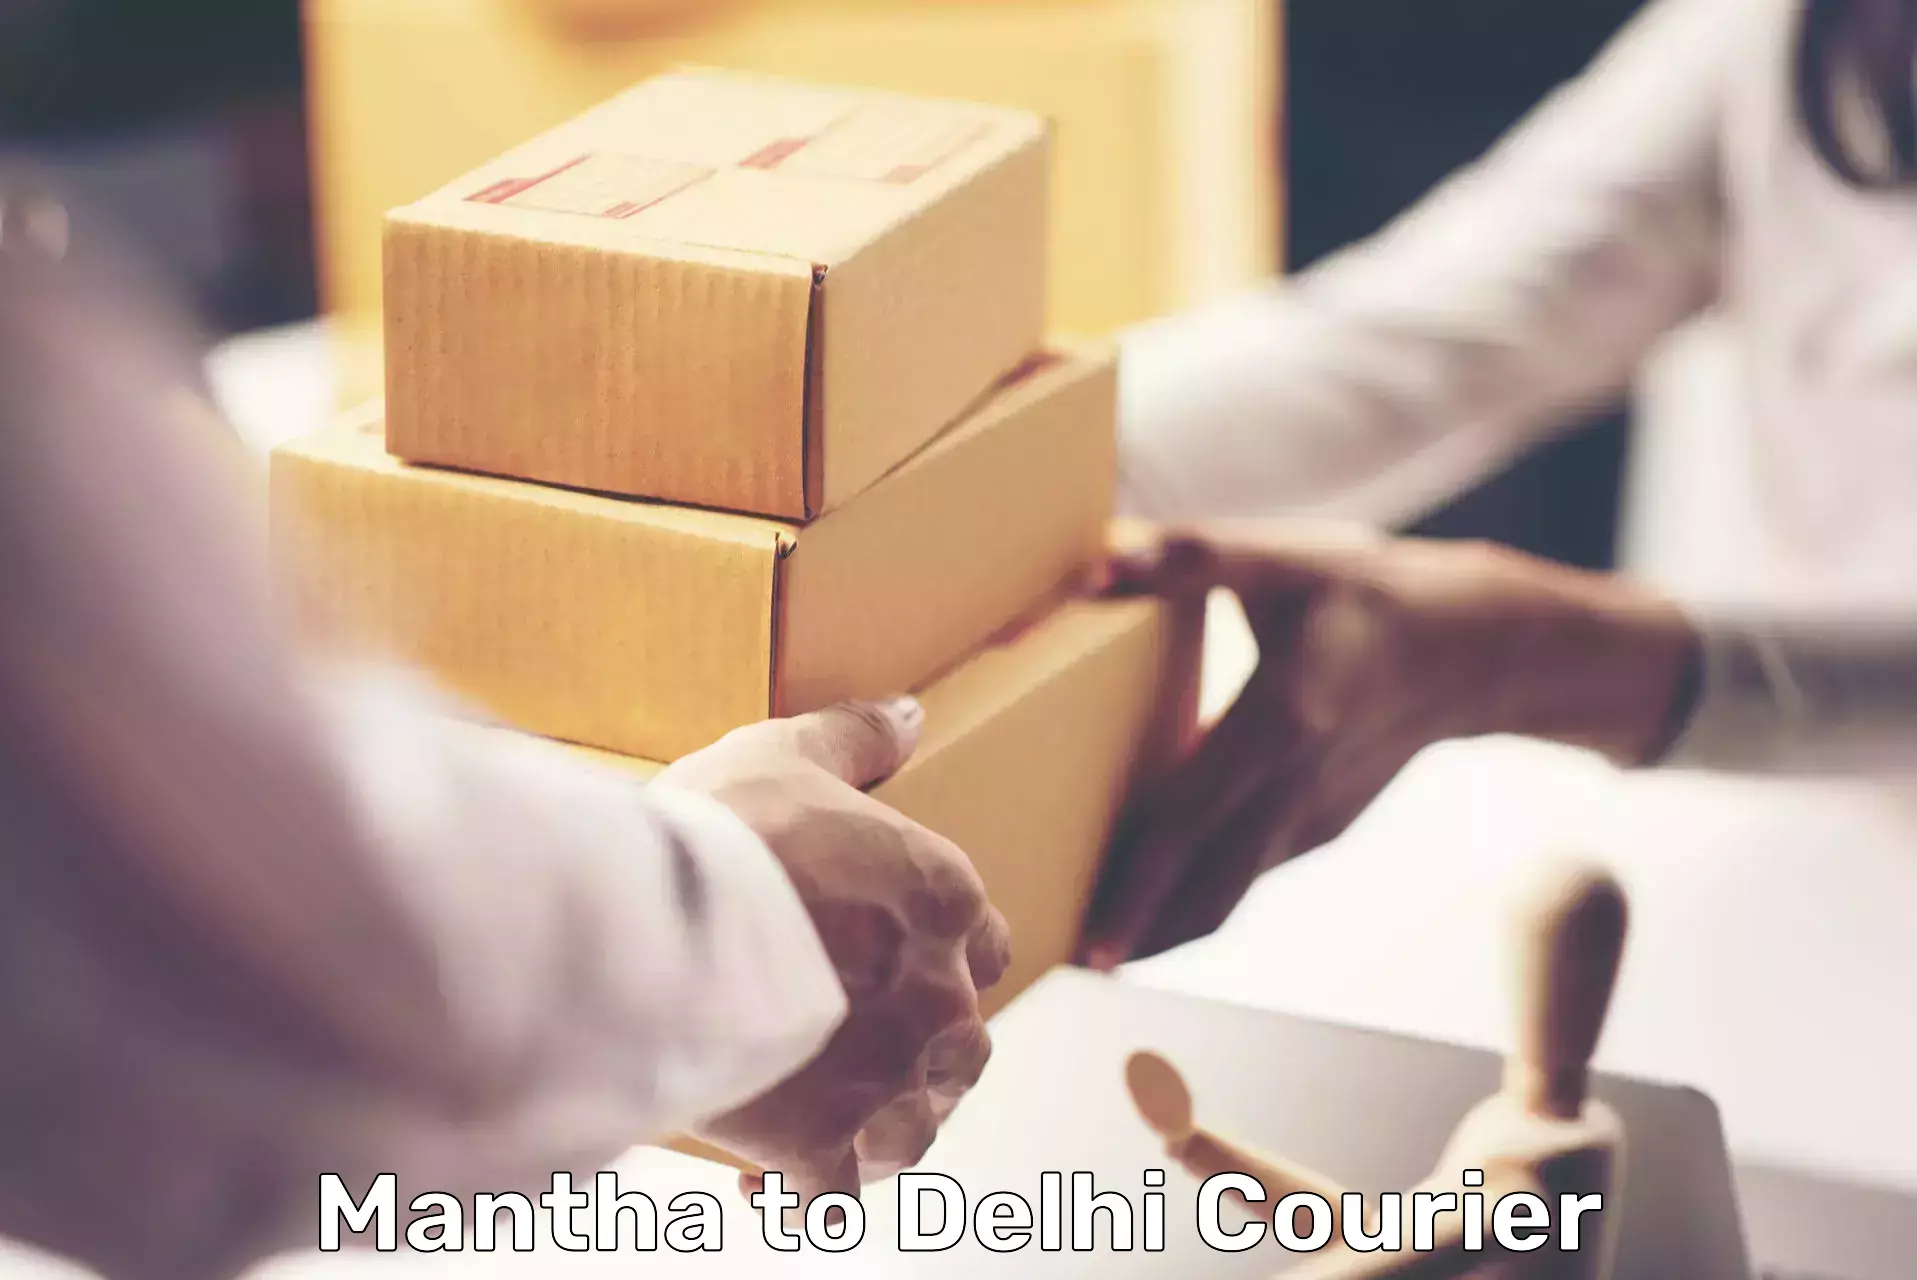 Smart logistics strategies Mantha to Jhilmil